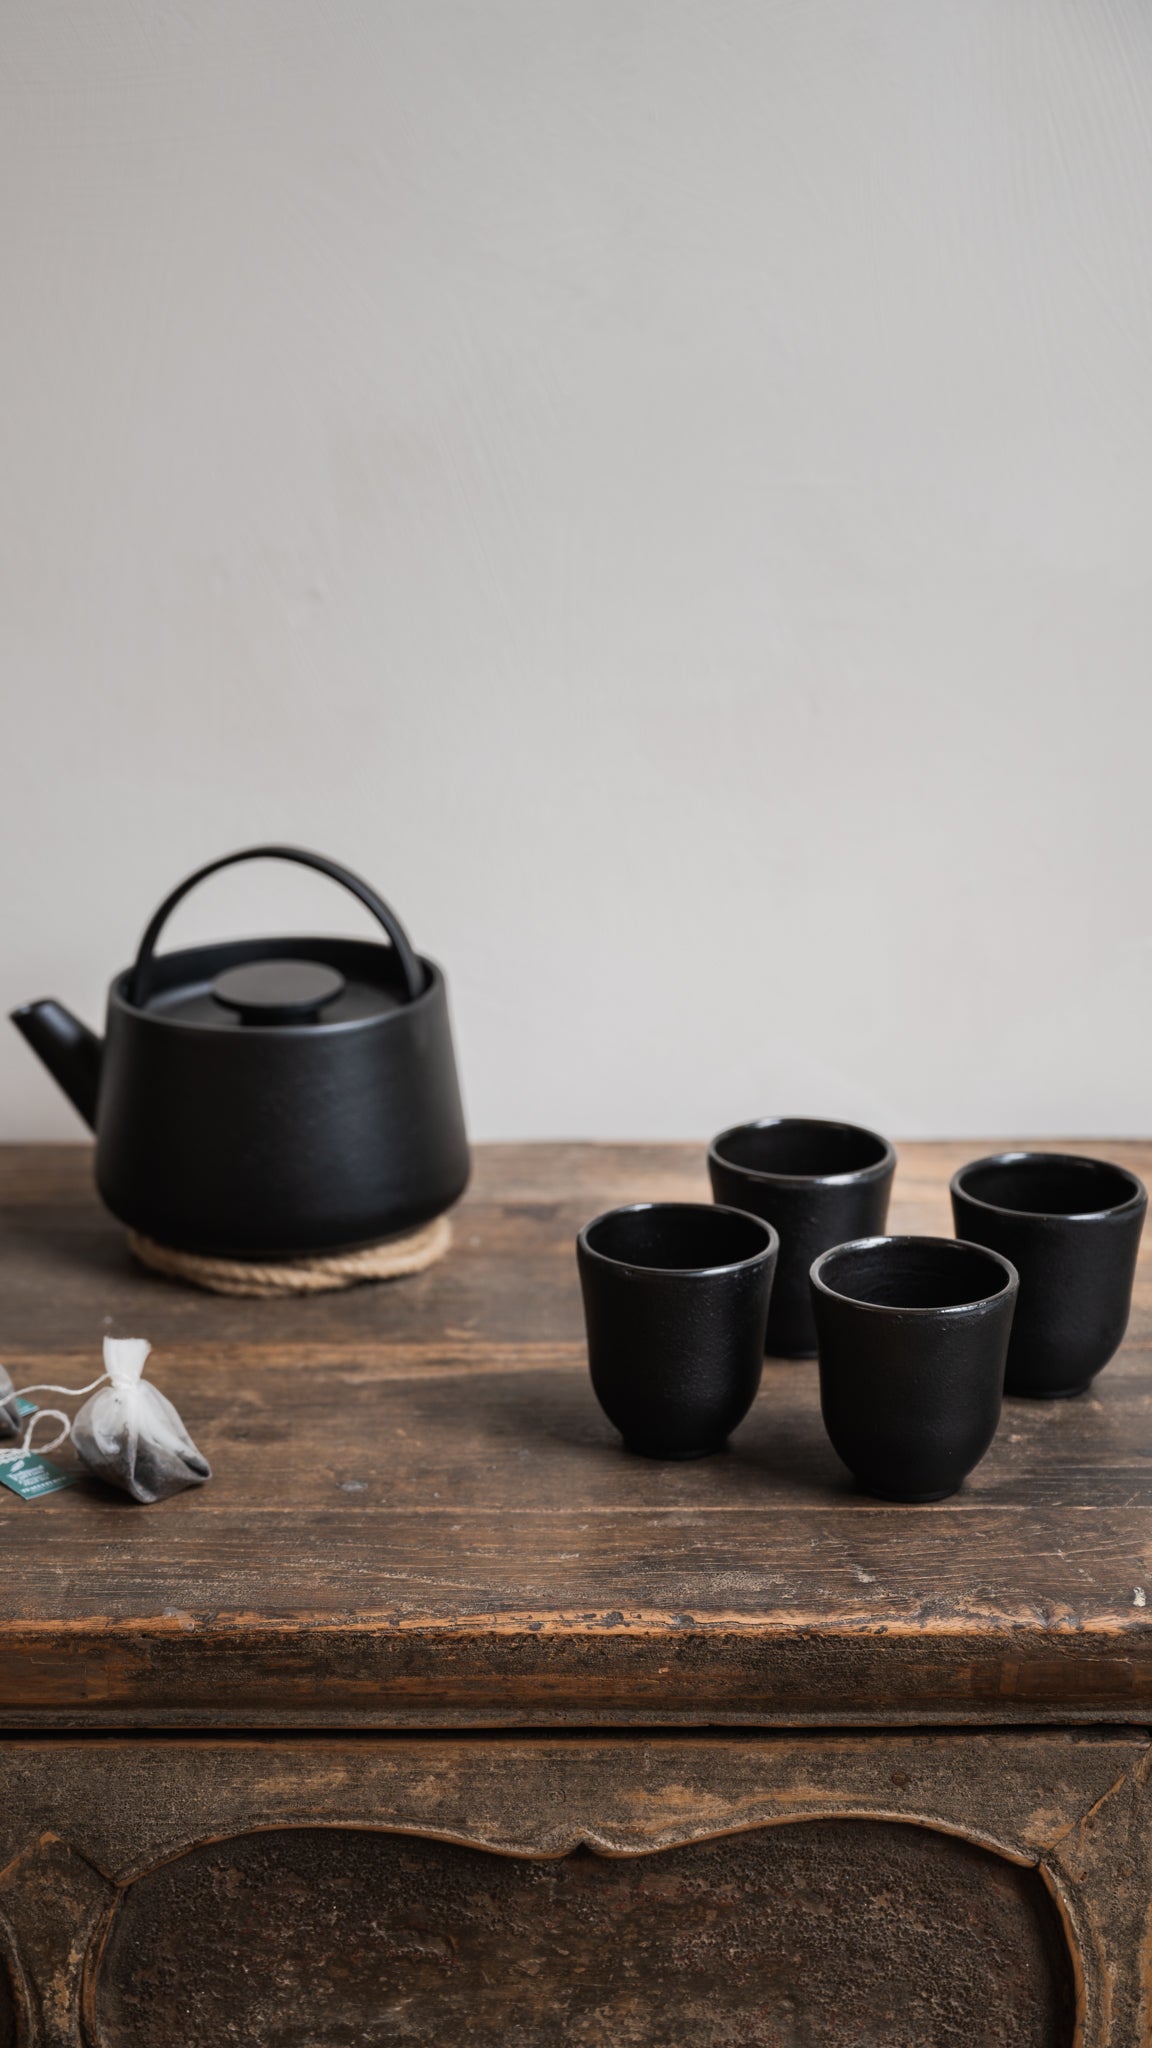 Serax Inku Teacups with matching Inku Teapot.